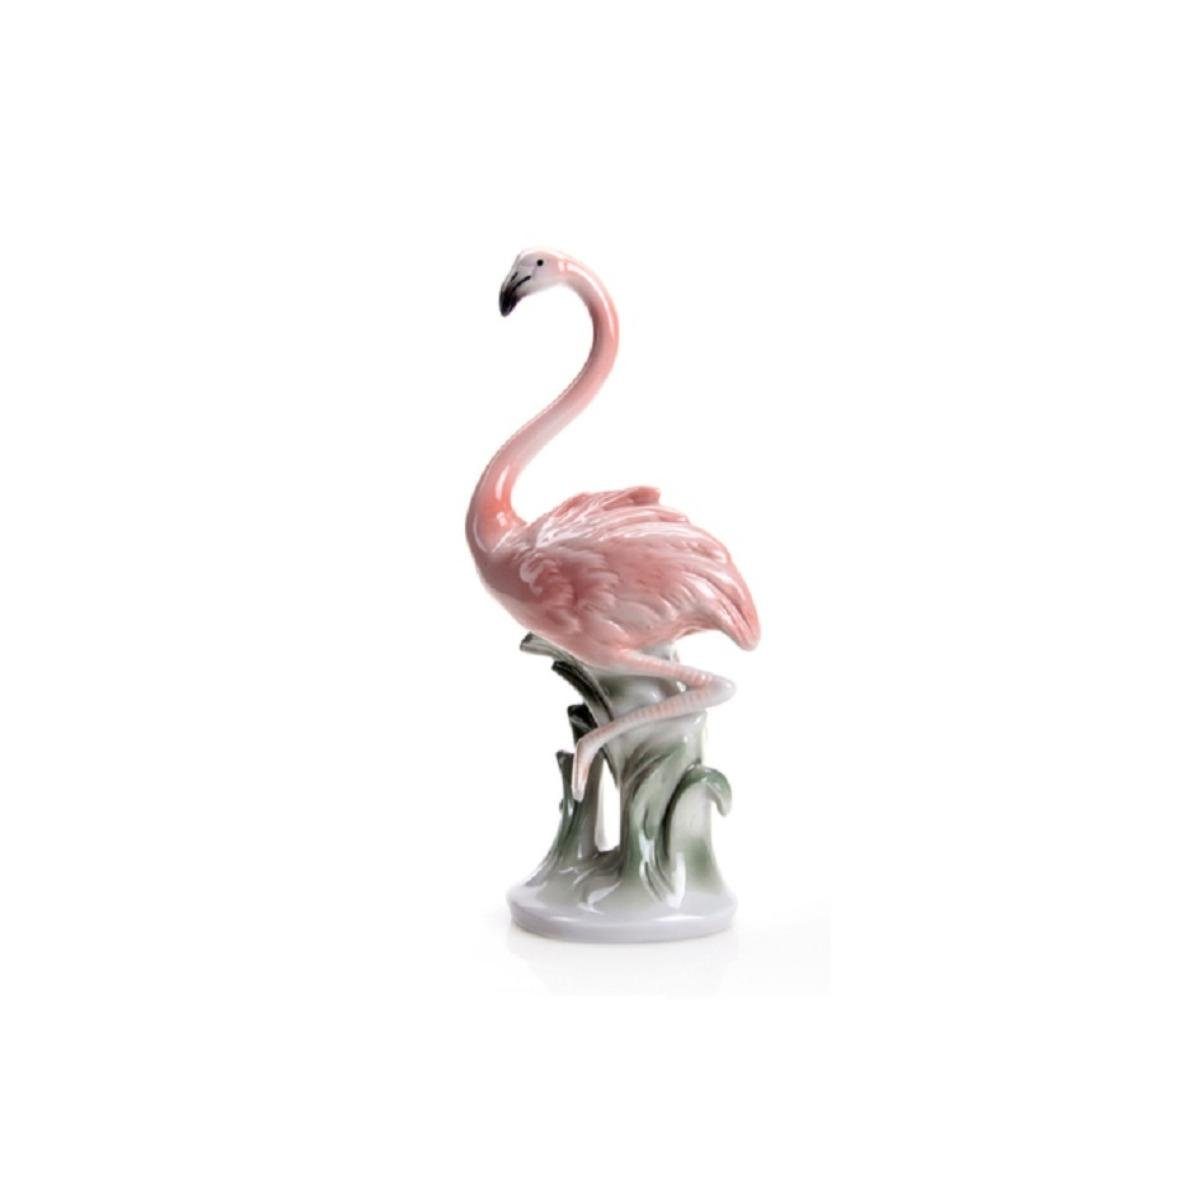 Wagner & Apel Porzellan Dekofigur 02835/40 - Flamingo